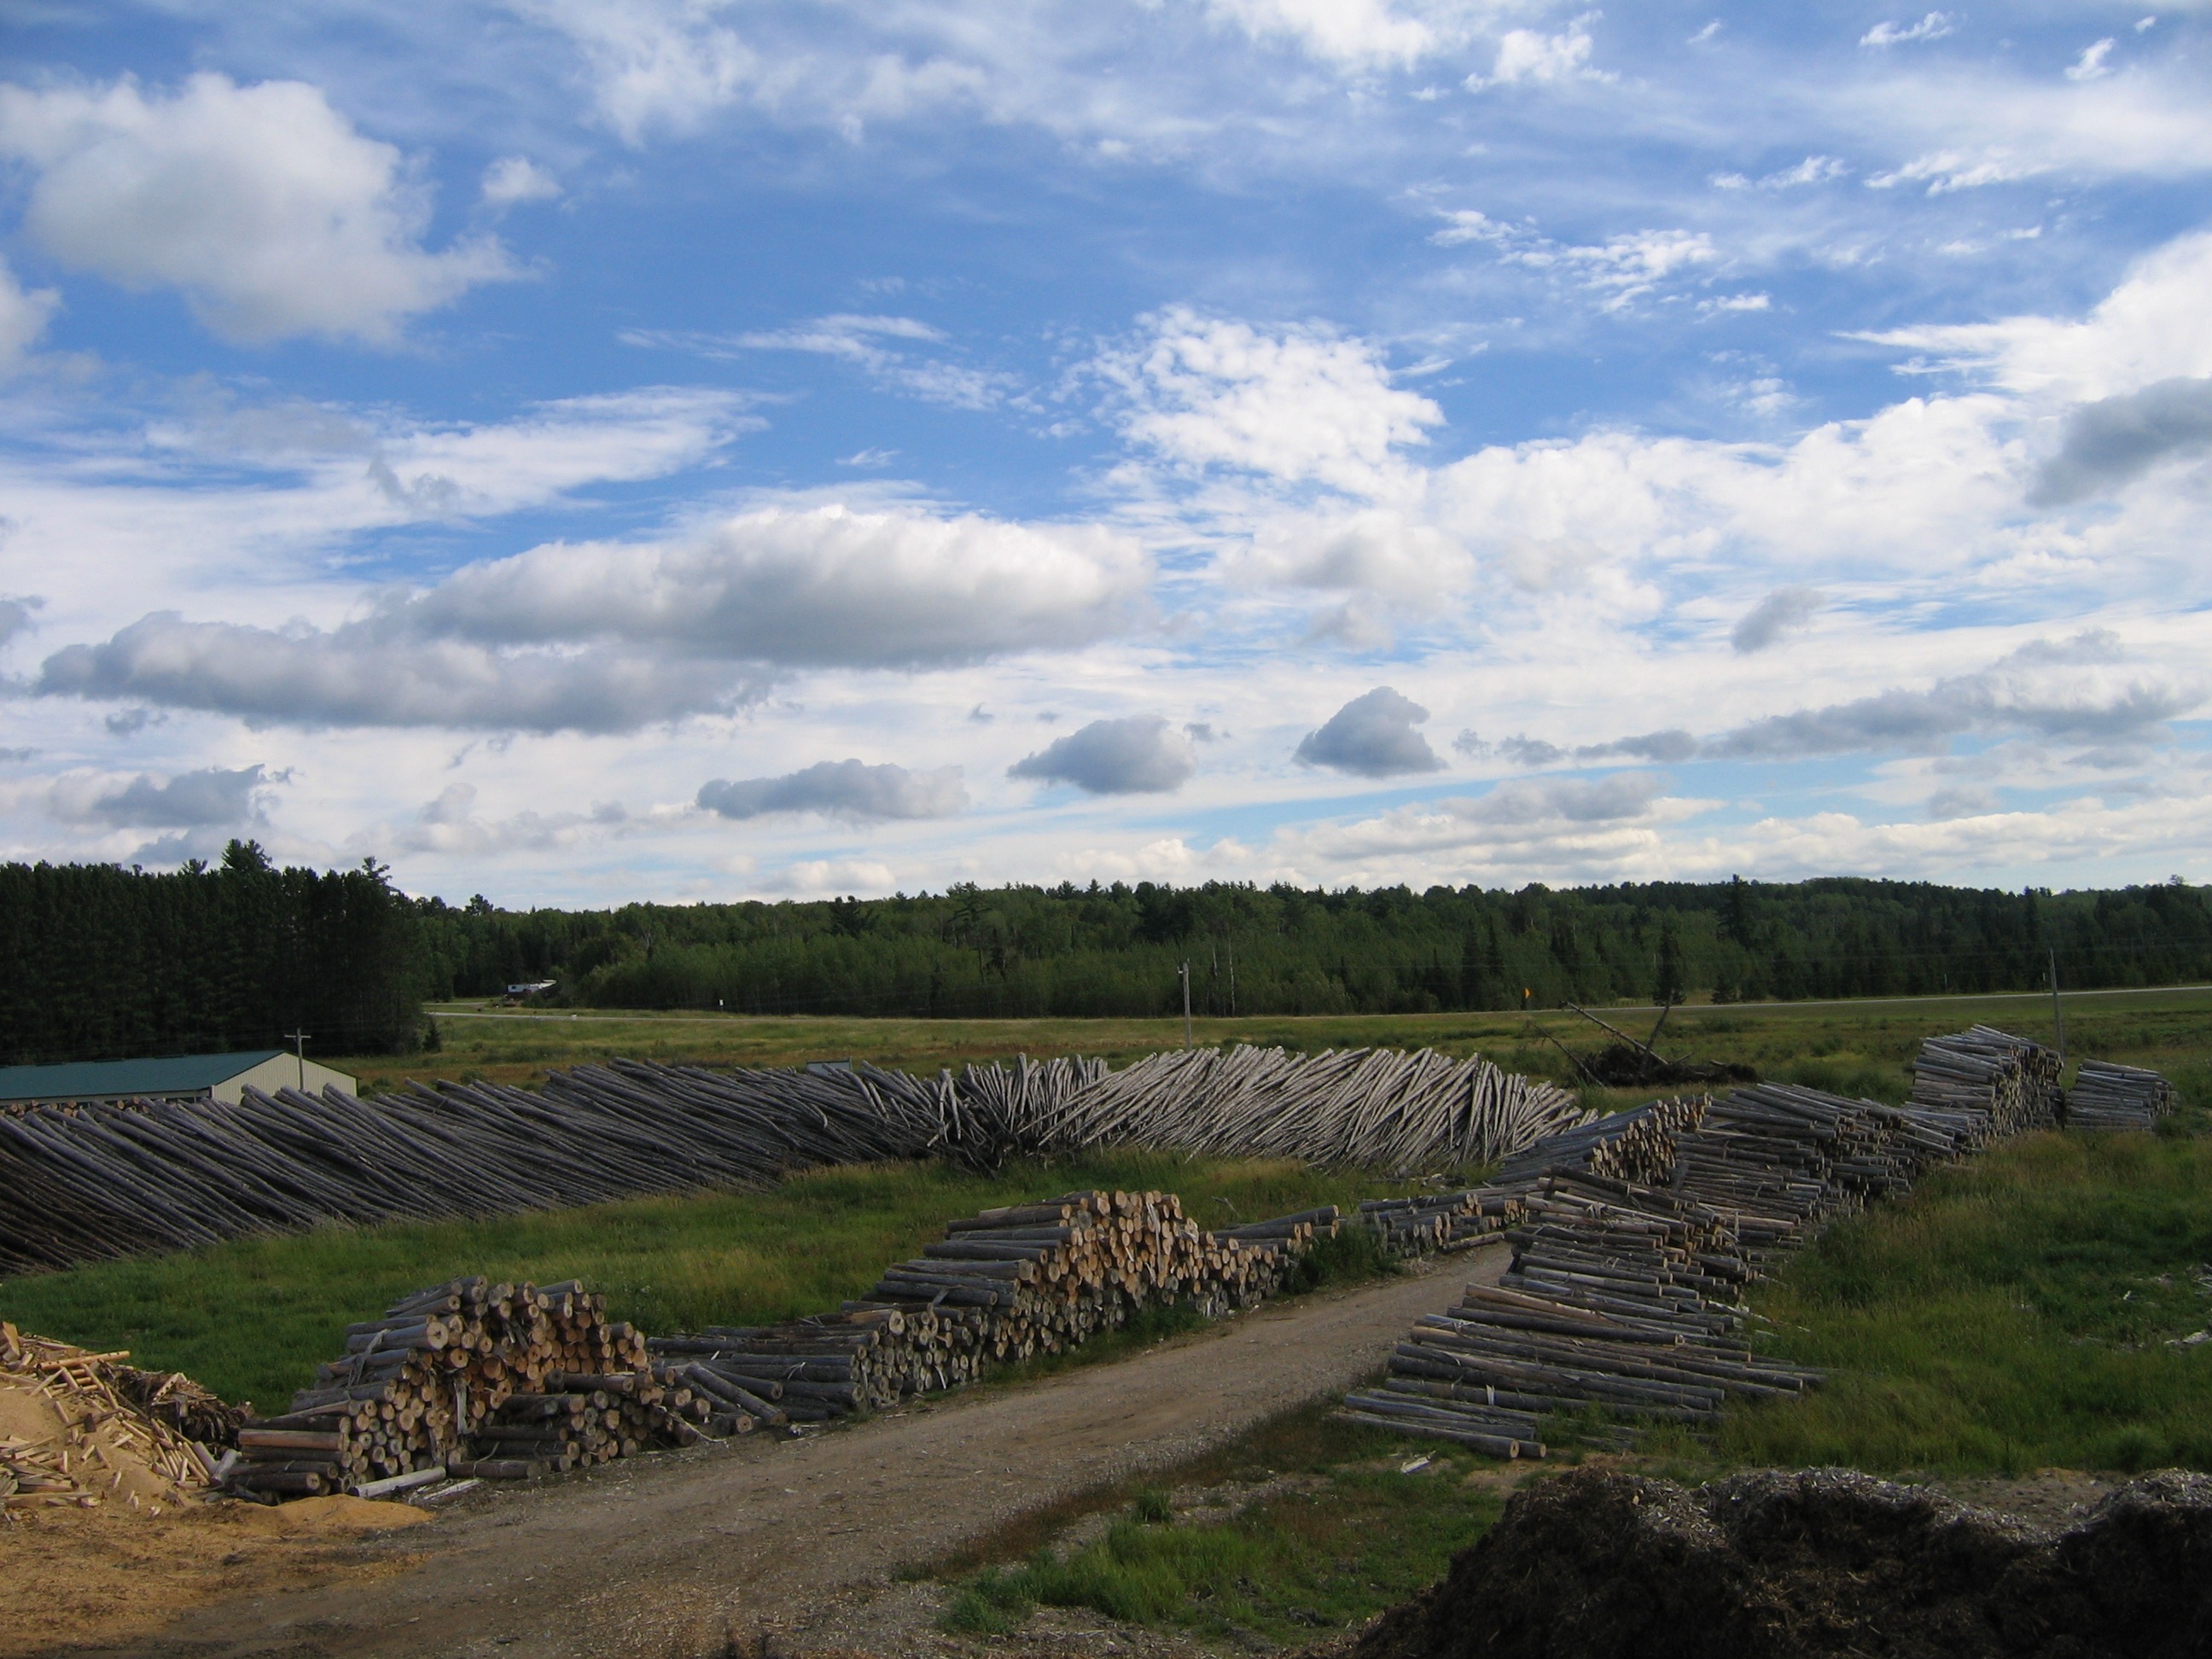 Timber log piles at Ryan's Rustic Railings